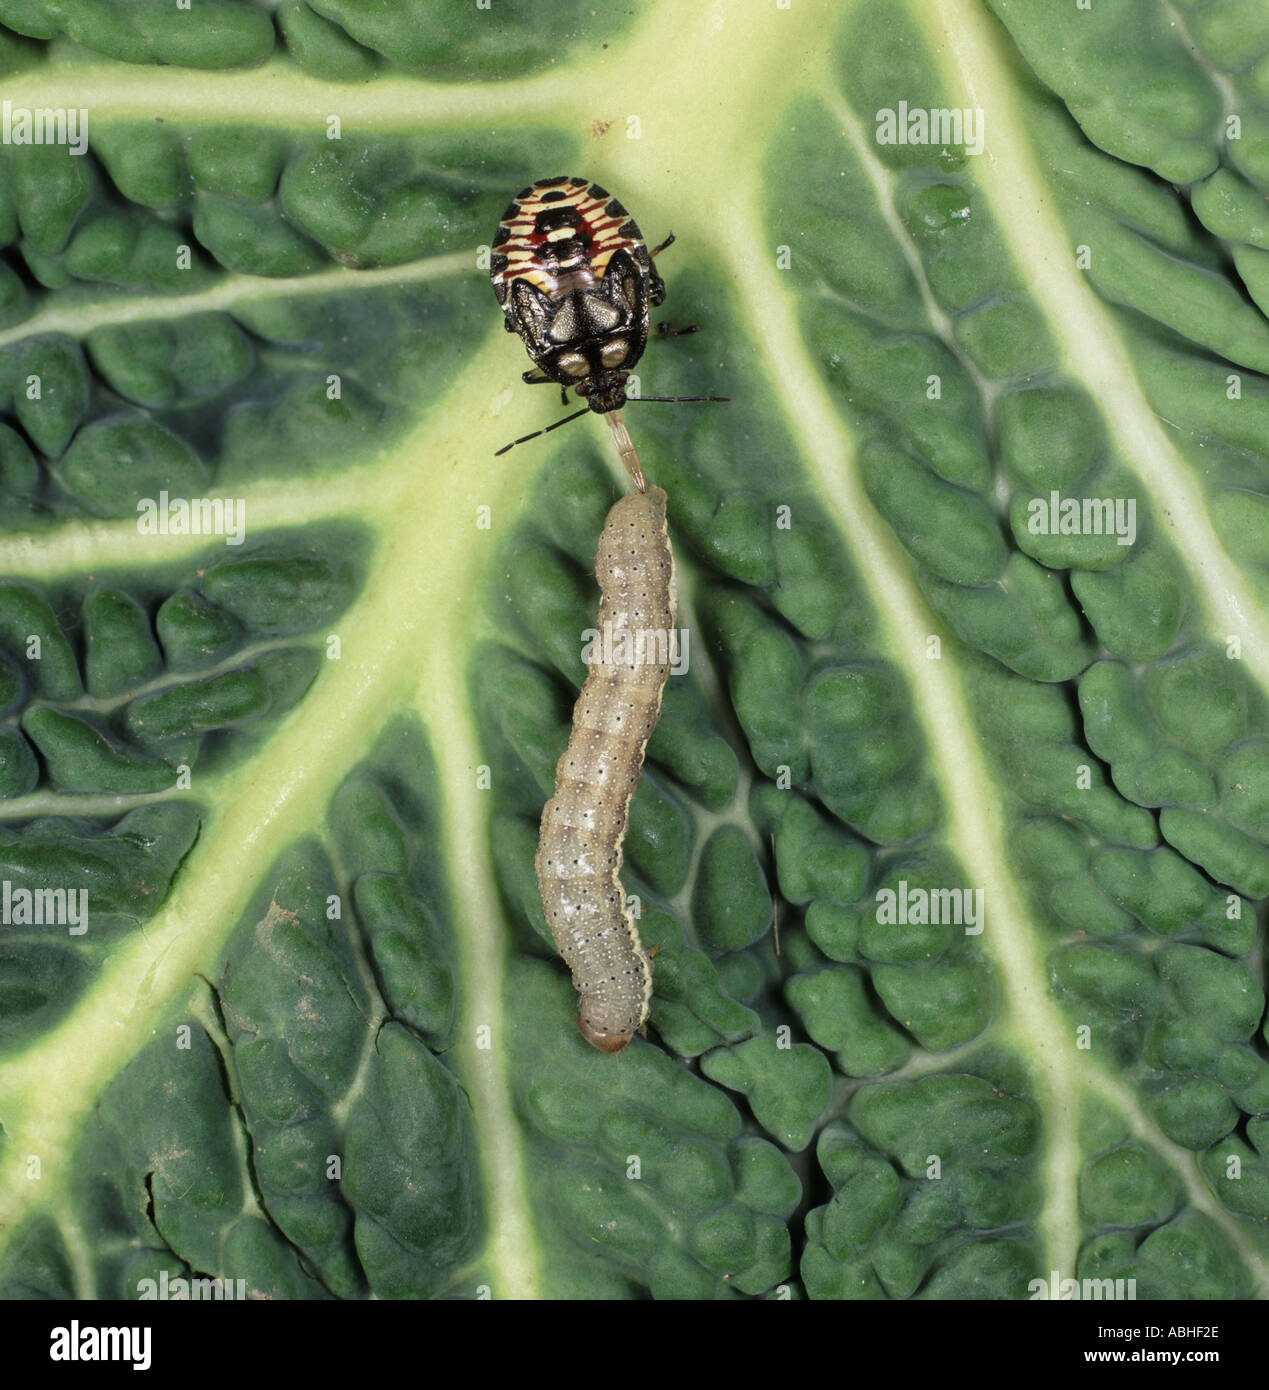 Predatori di stink bug Podisus maculiventris ninfa con caterpillar preda sulla lamina Foto Stock